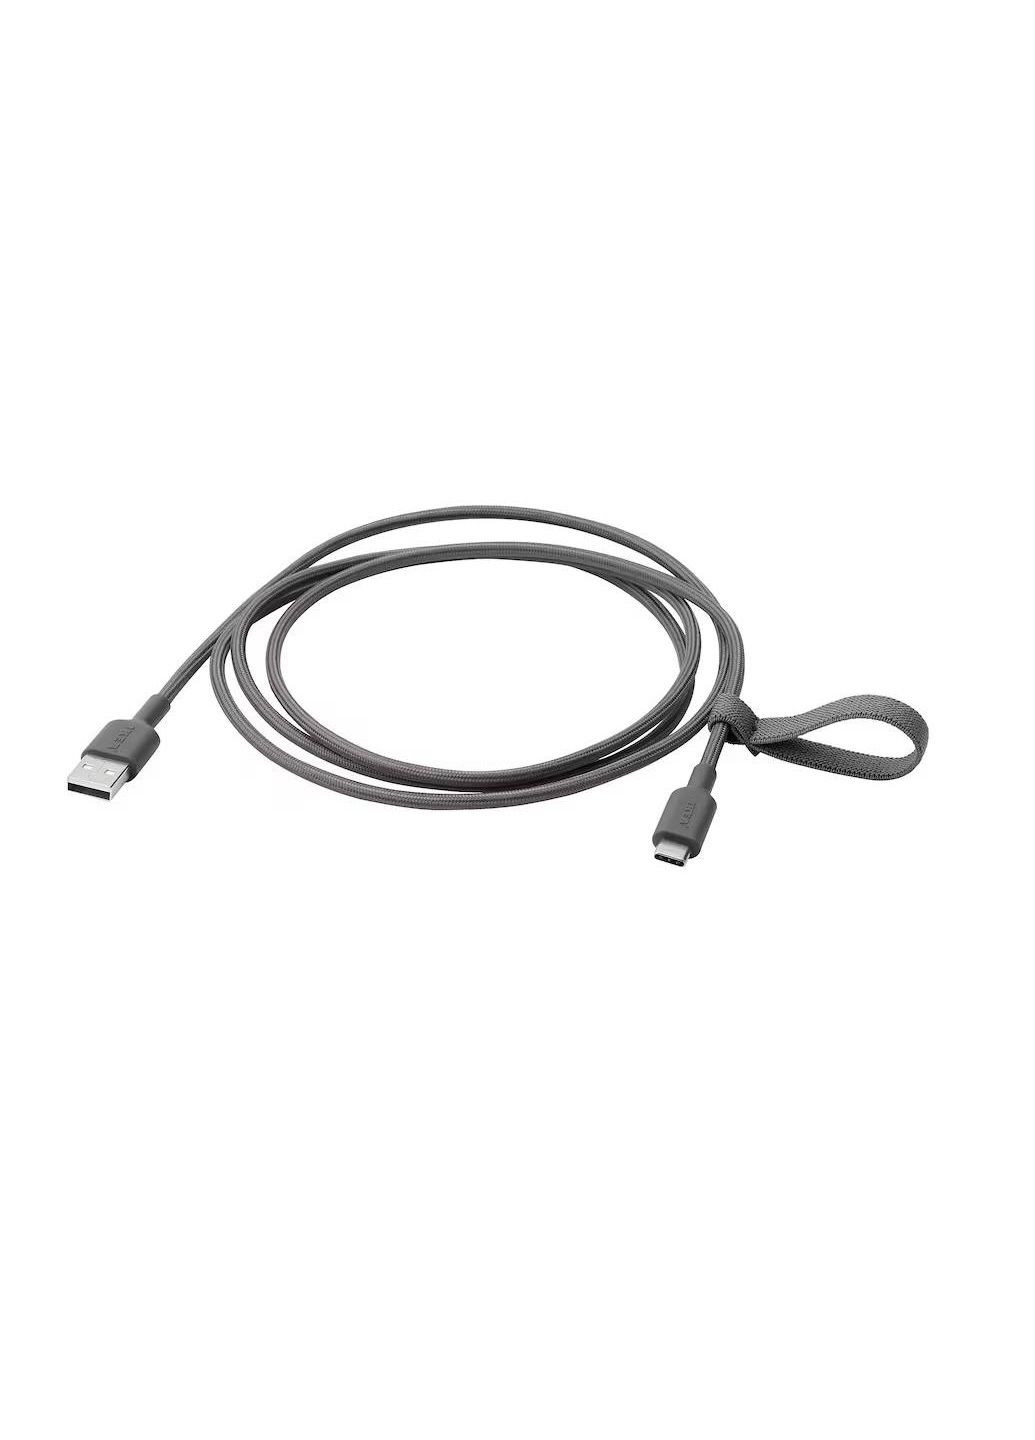 Кабель USB-A на USB-C, темно-серый,1,5 м IKEA lillhult (260473748)